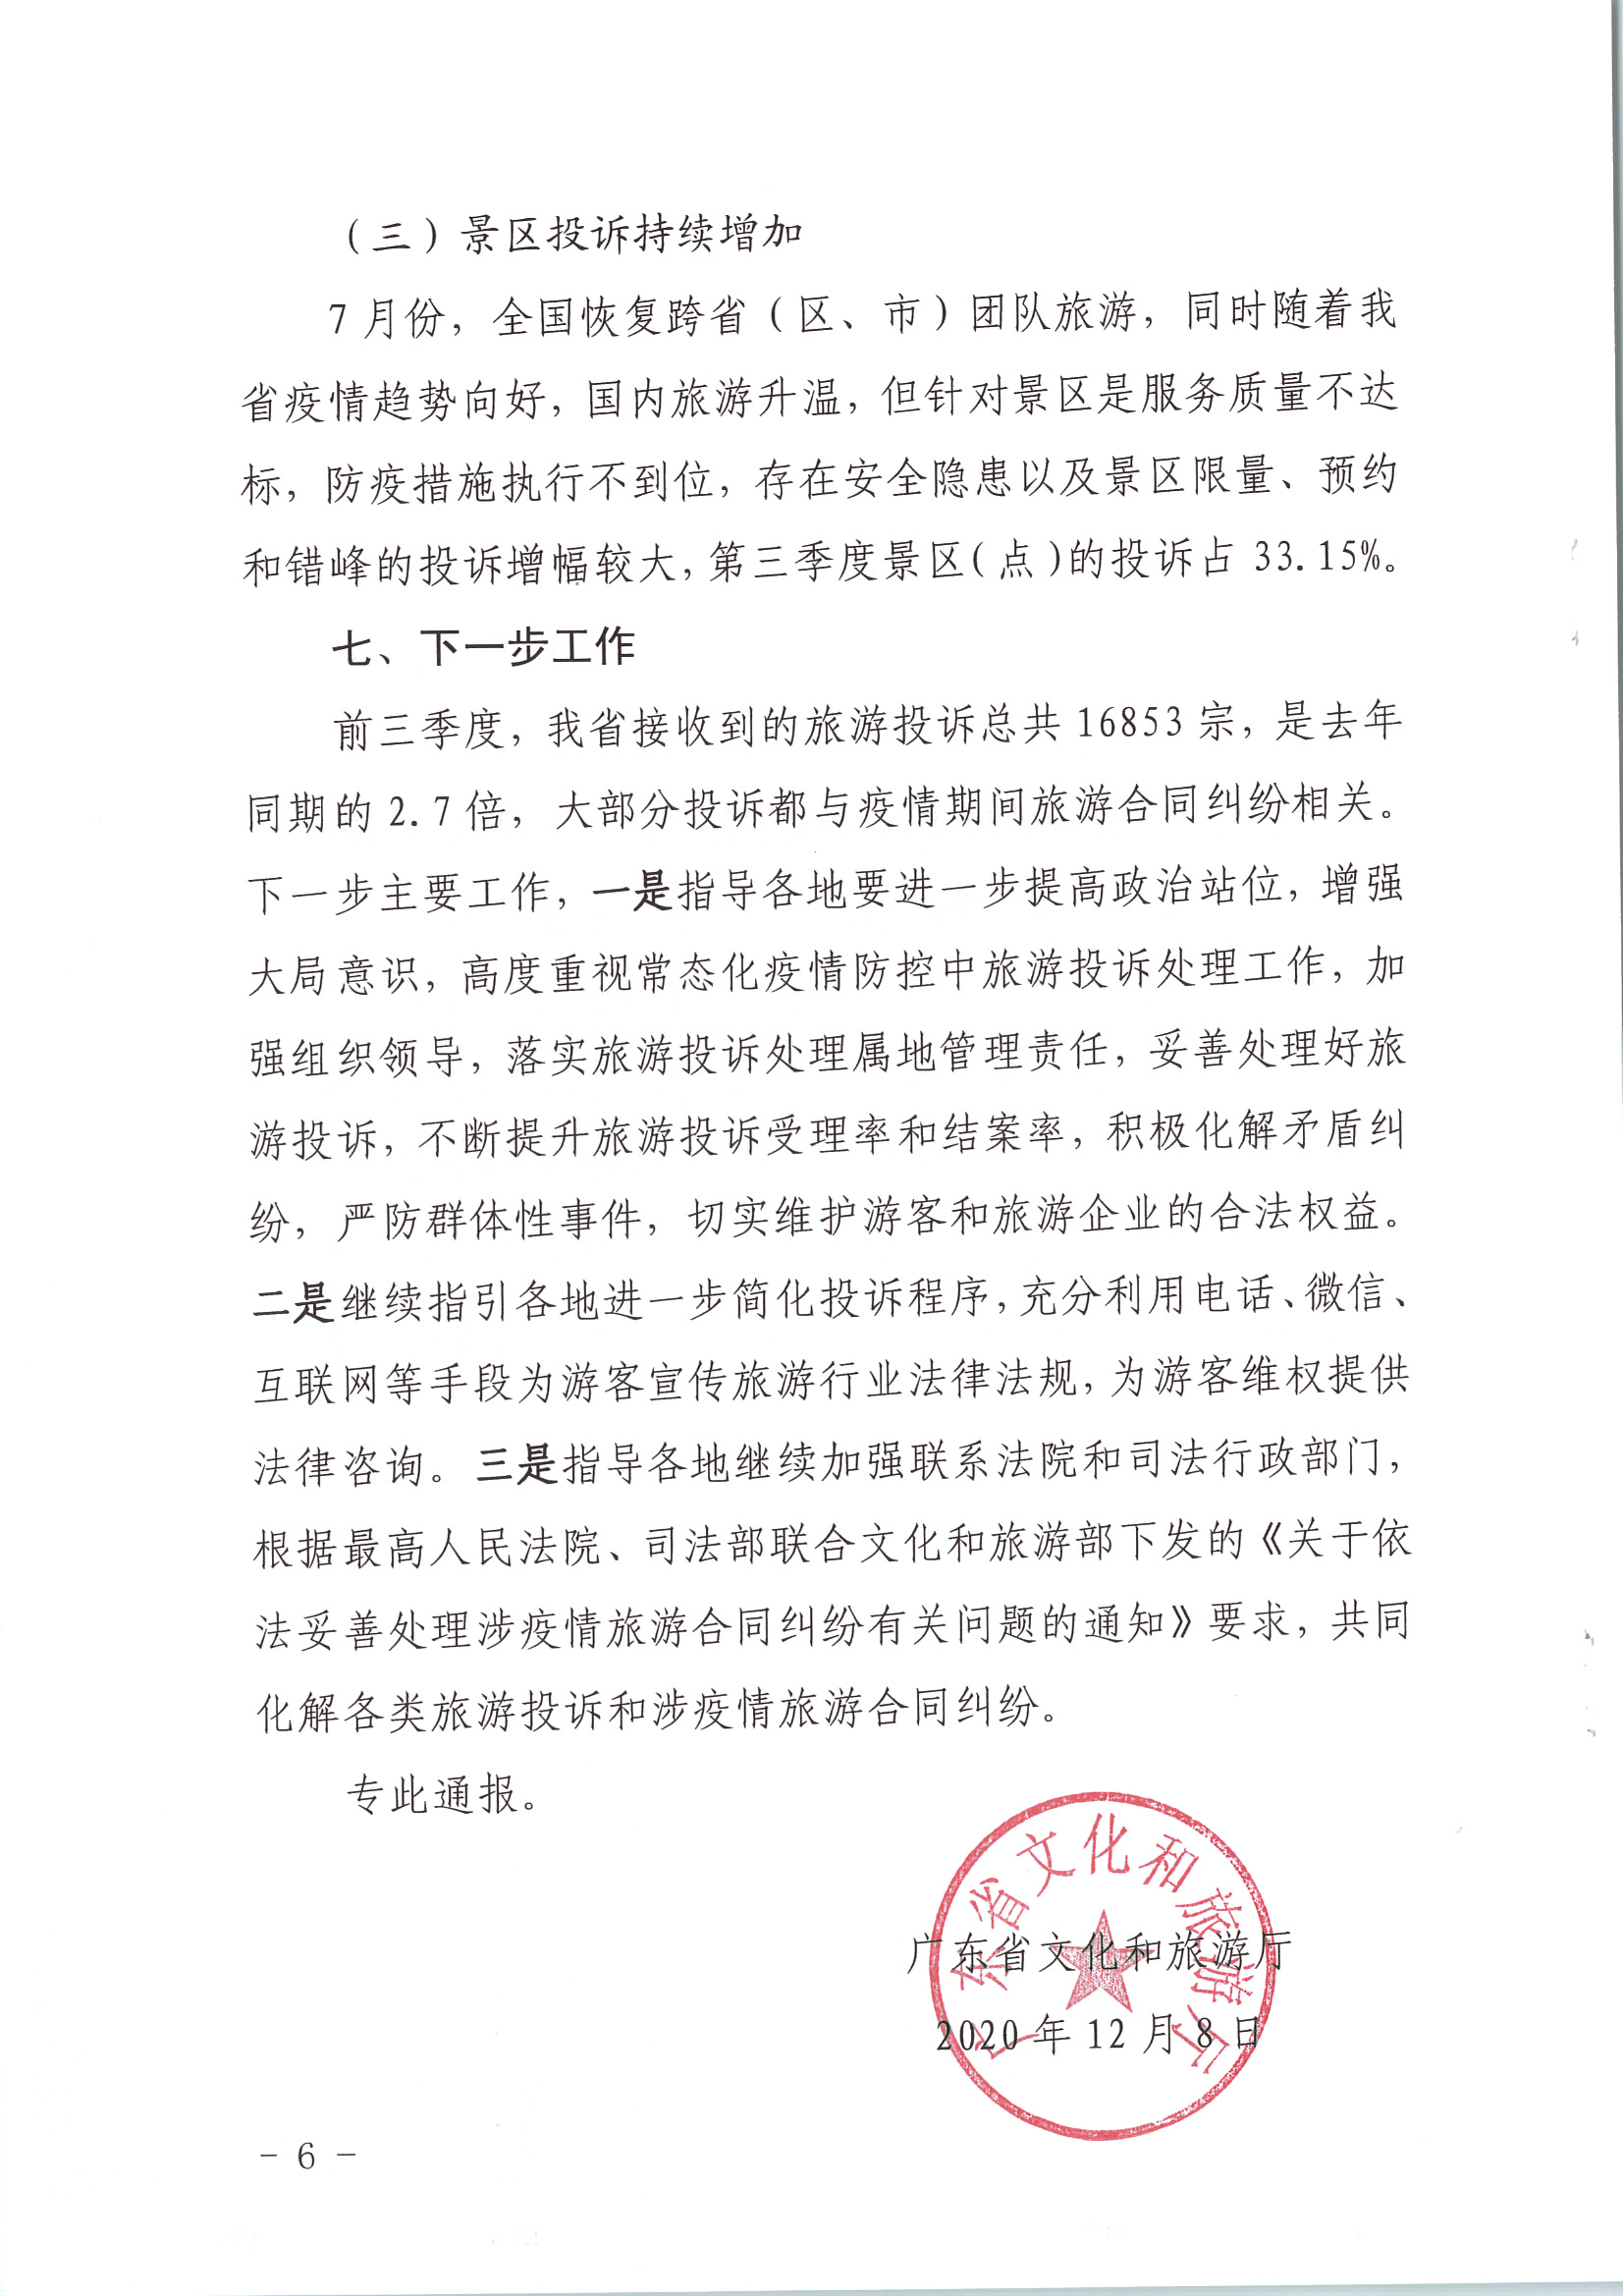 广东省文化和旅游厅关于2020年第三季度旅游投诉情况的通报_页面_6.jpg